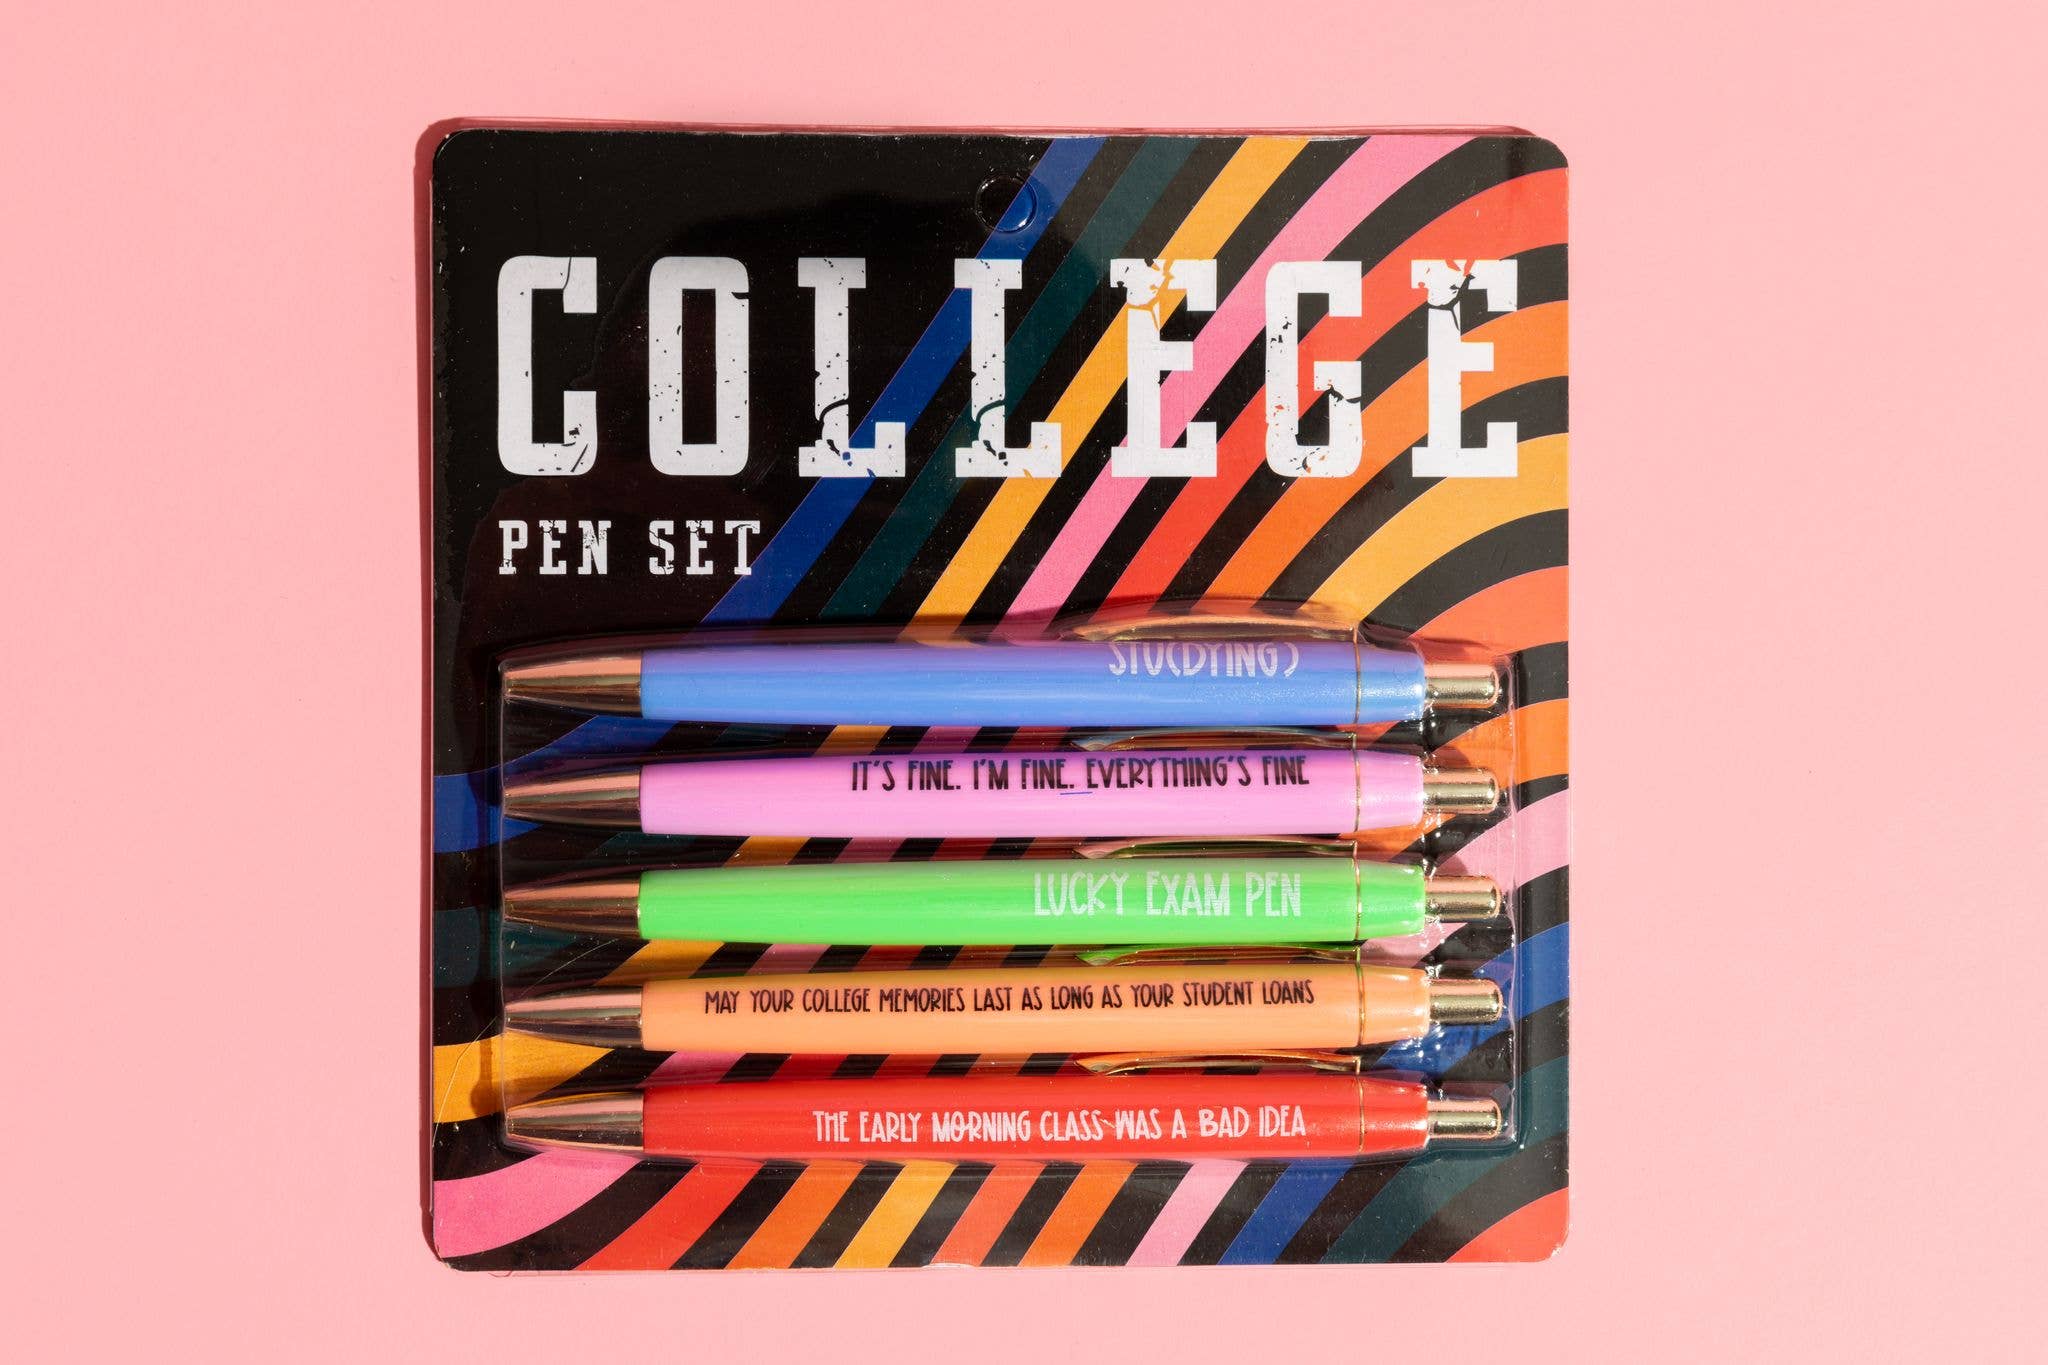 FUN CLUB - College Pen Set